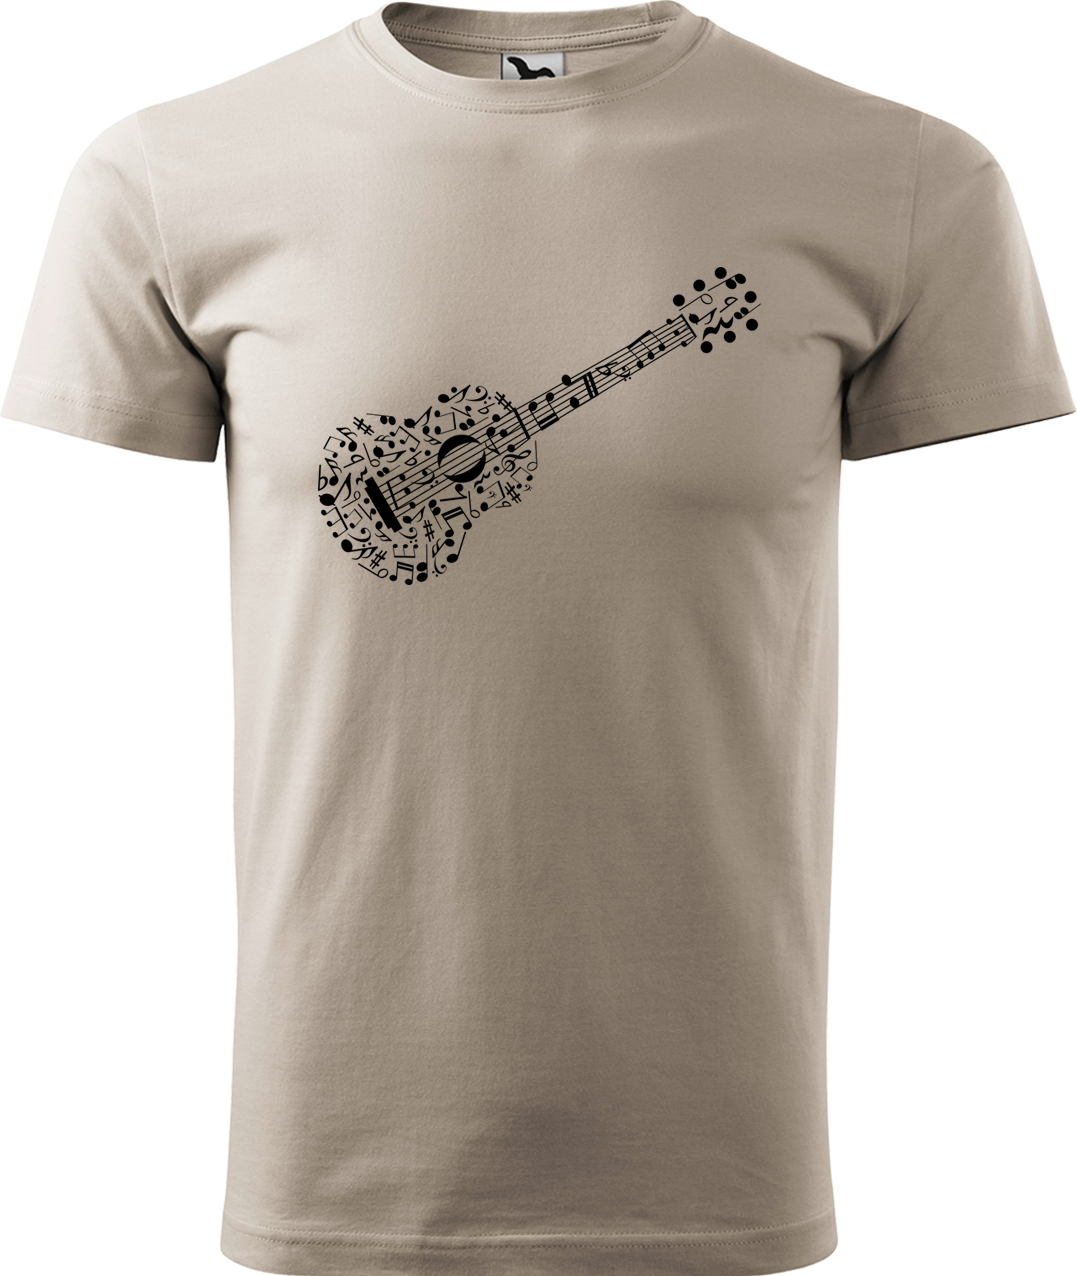 Pánské tričko s kytarou - Kytara z not Velikost: XL, Barva: Ledově šedá (51), Střih: pánský